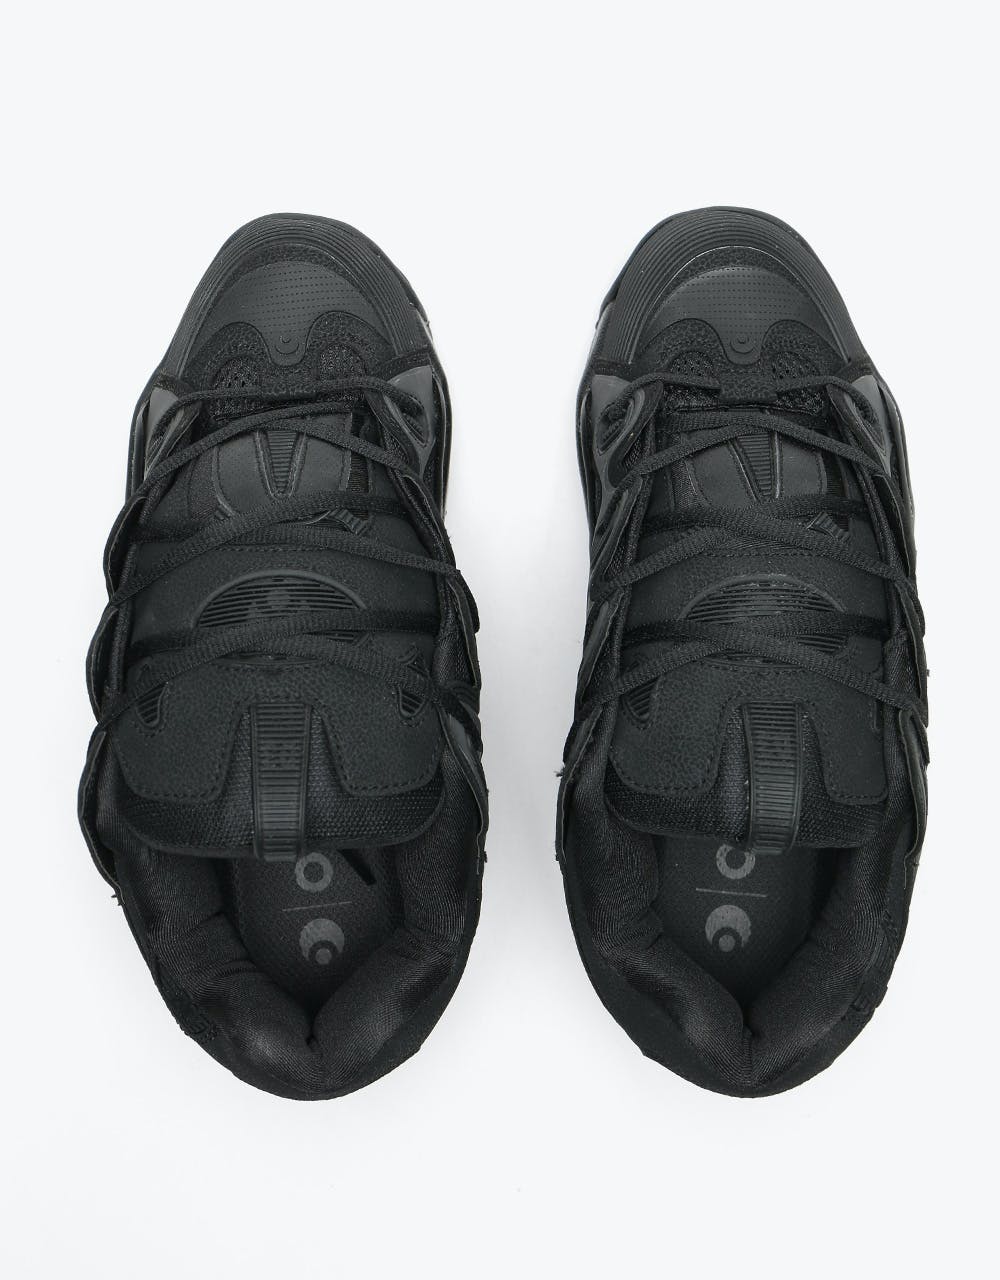 Osiris D3 2001 Skate Shoes - Black/Black/Black